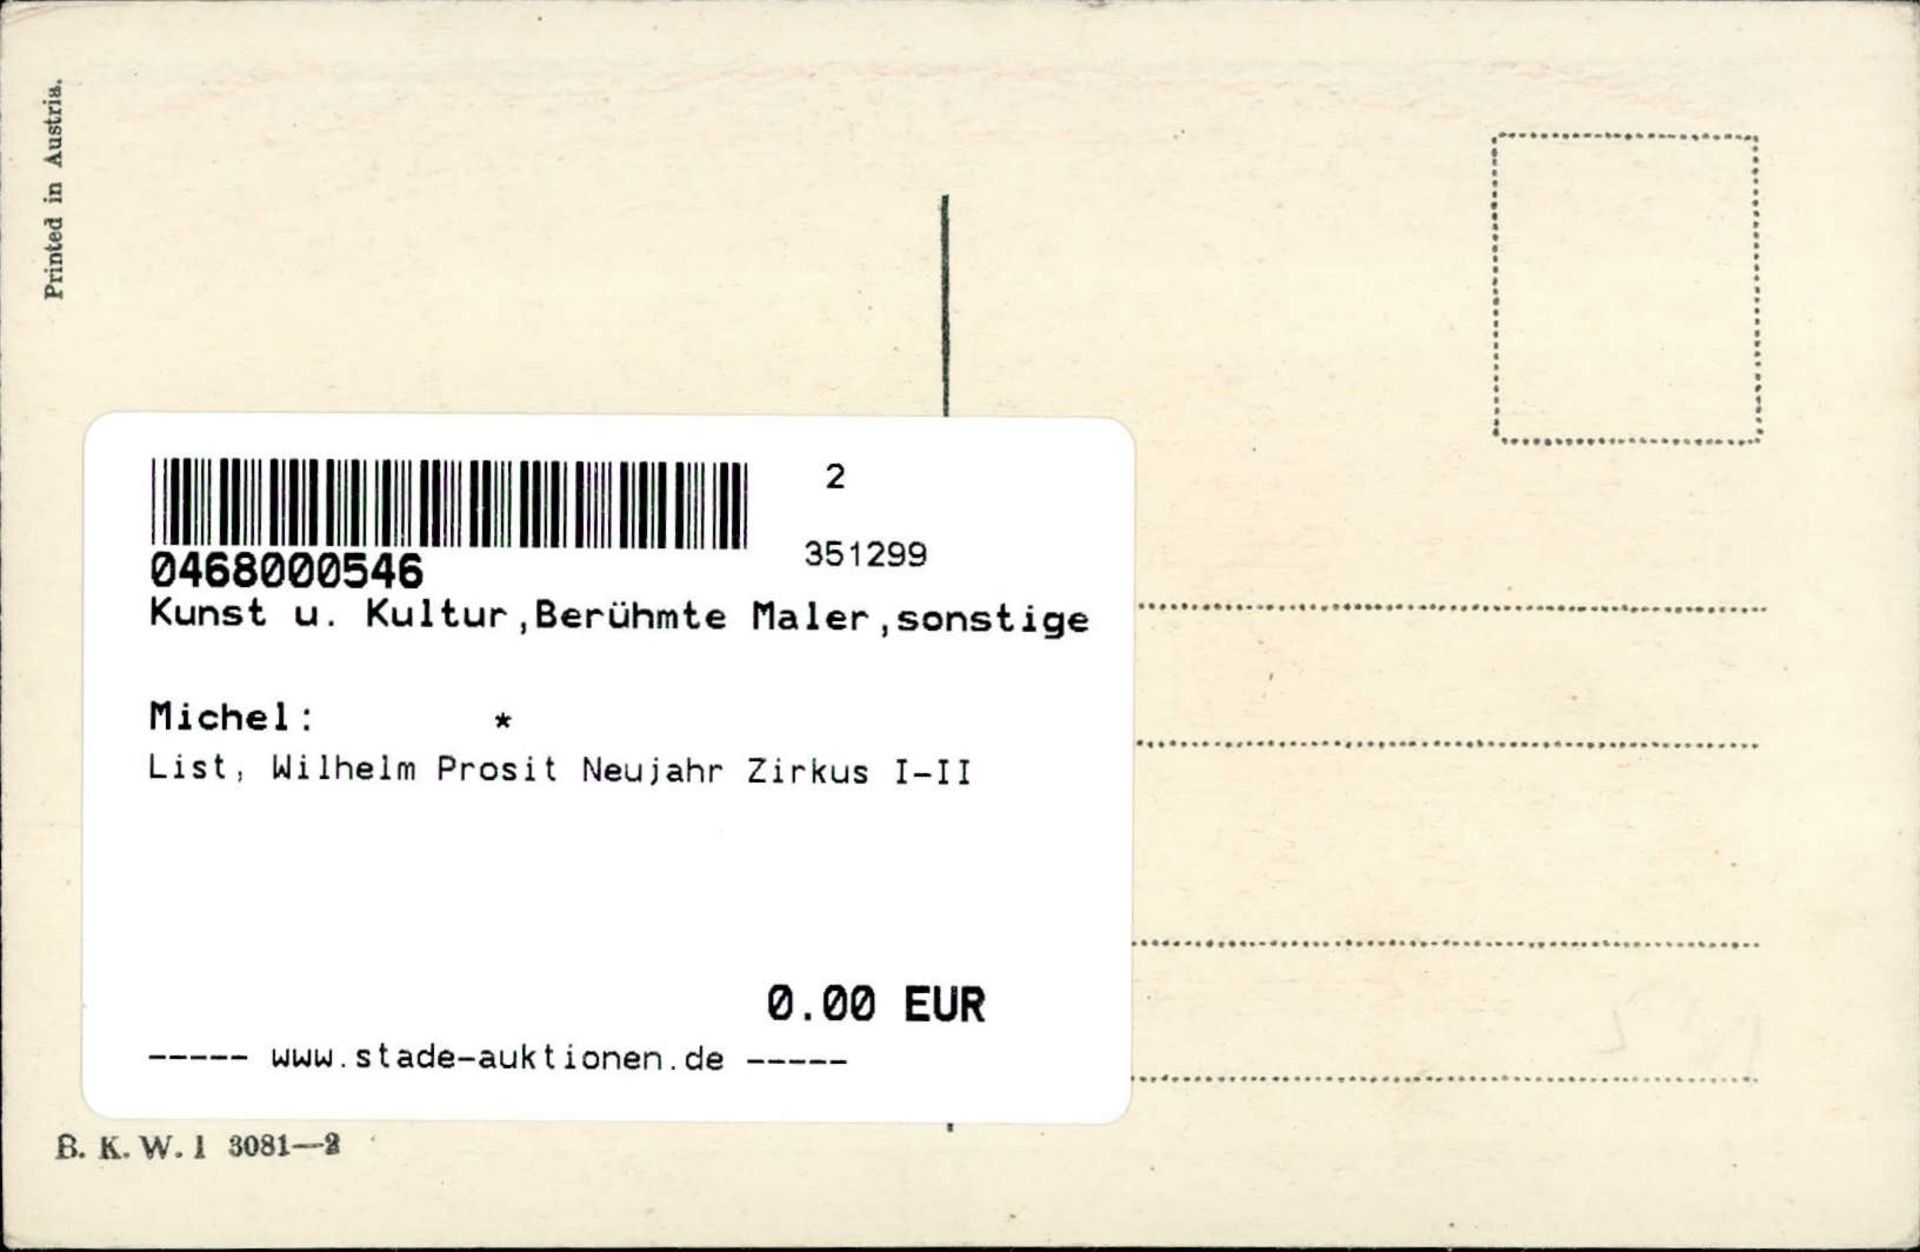 List, Wilhelm Prosit Neujahr Zirkus I-II - Image 2 of 2